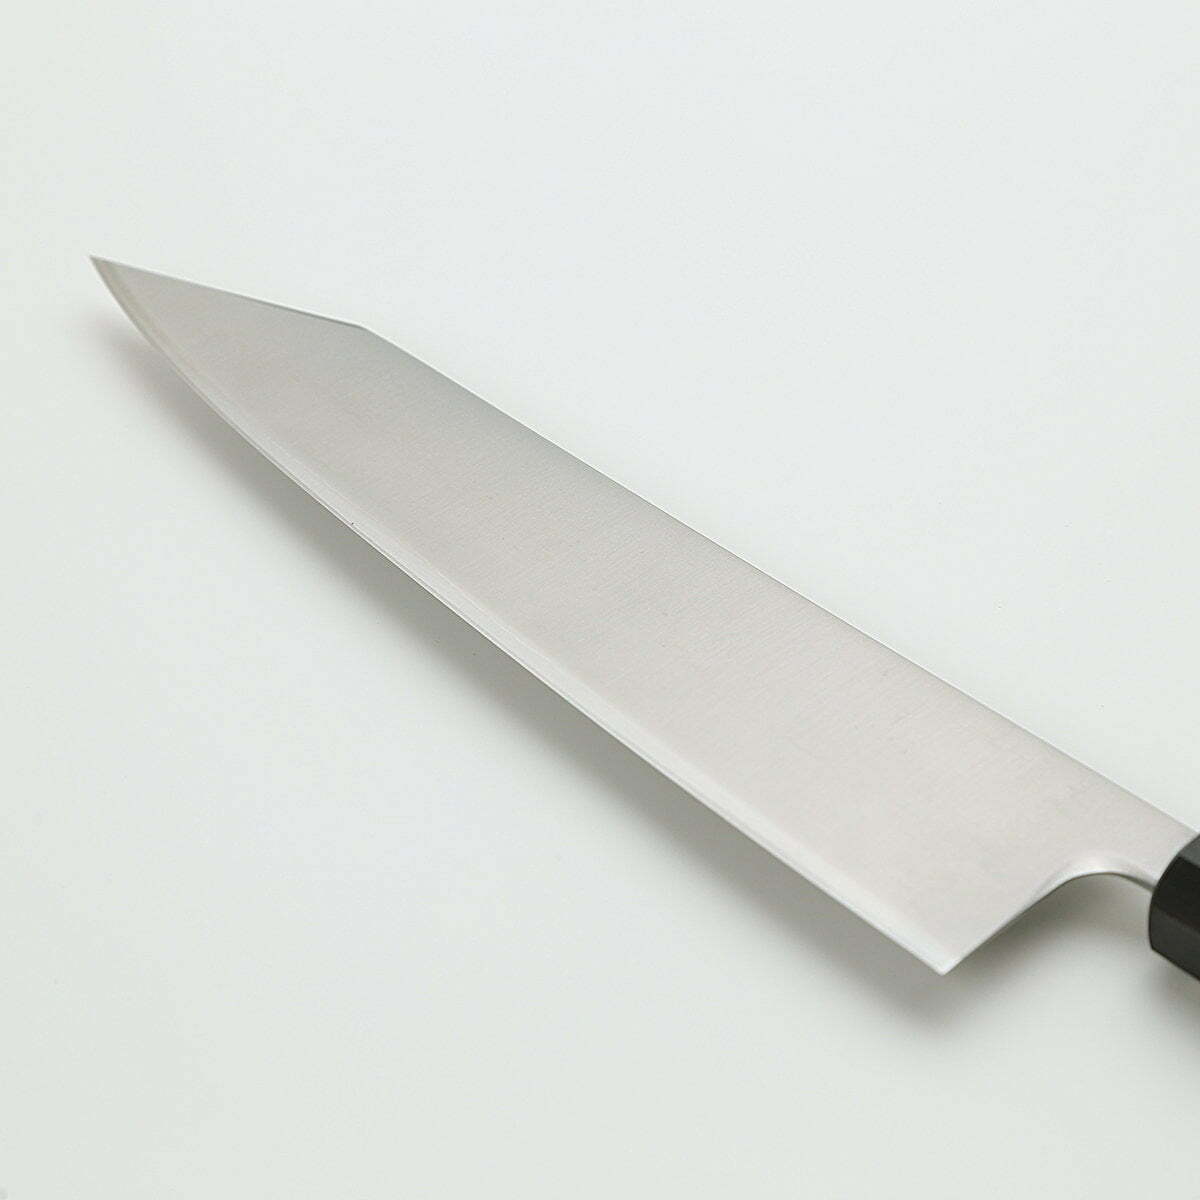 סכין שף רב-תכליתית קִּירִיצוּקֶה גִּיוּטוֹ 240מ״מ מחוזקת 3 שכבות: פלדת פחמן יפנית מתקדמת מסוג R2/SG2 עטופה פלדת אל-חלד גימור מבריק ג׳יקו סאקאיי יפן